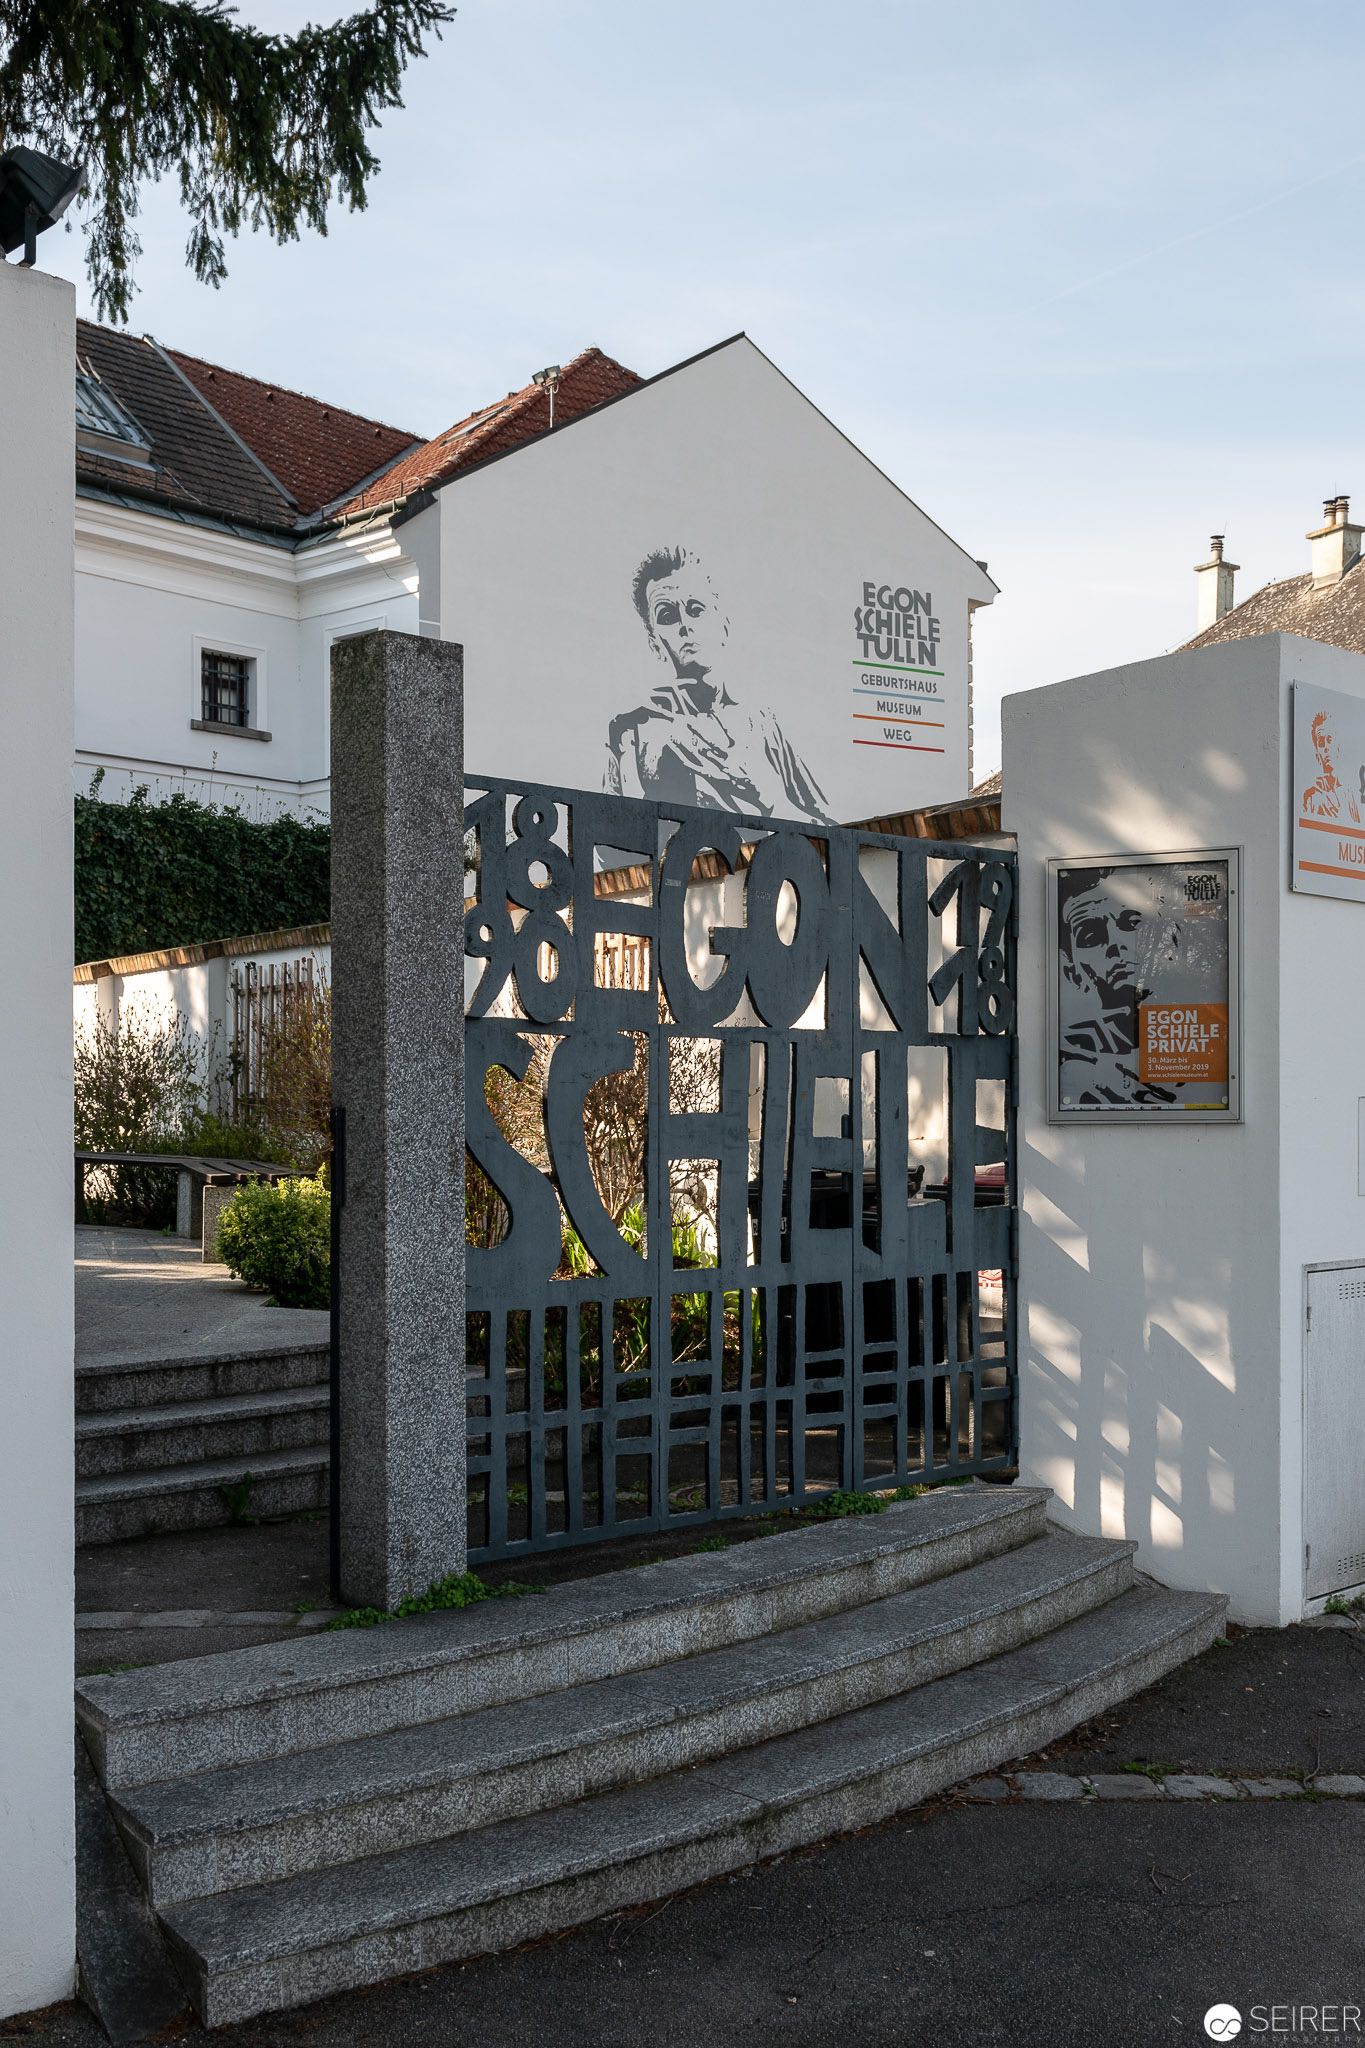 Egon Schiele Museum in Tulln